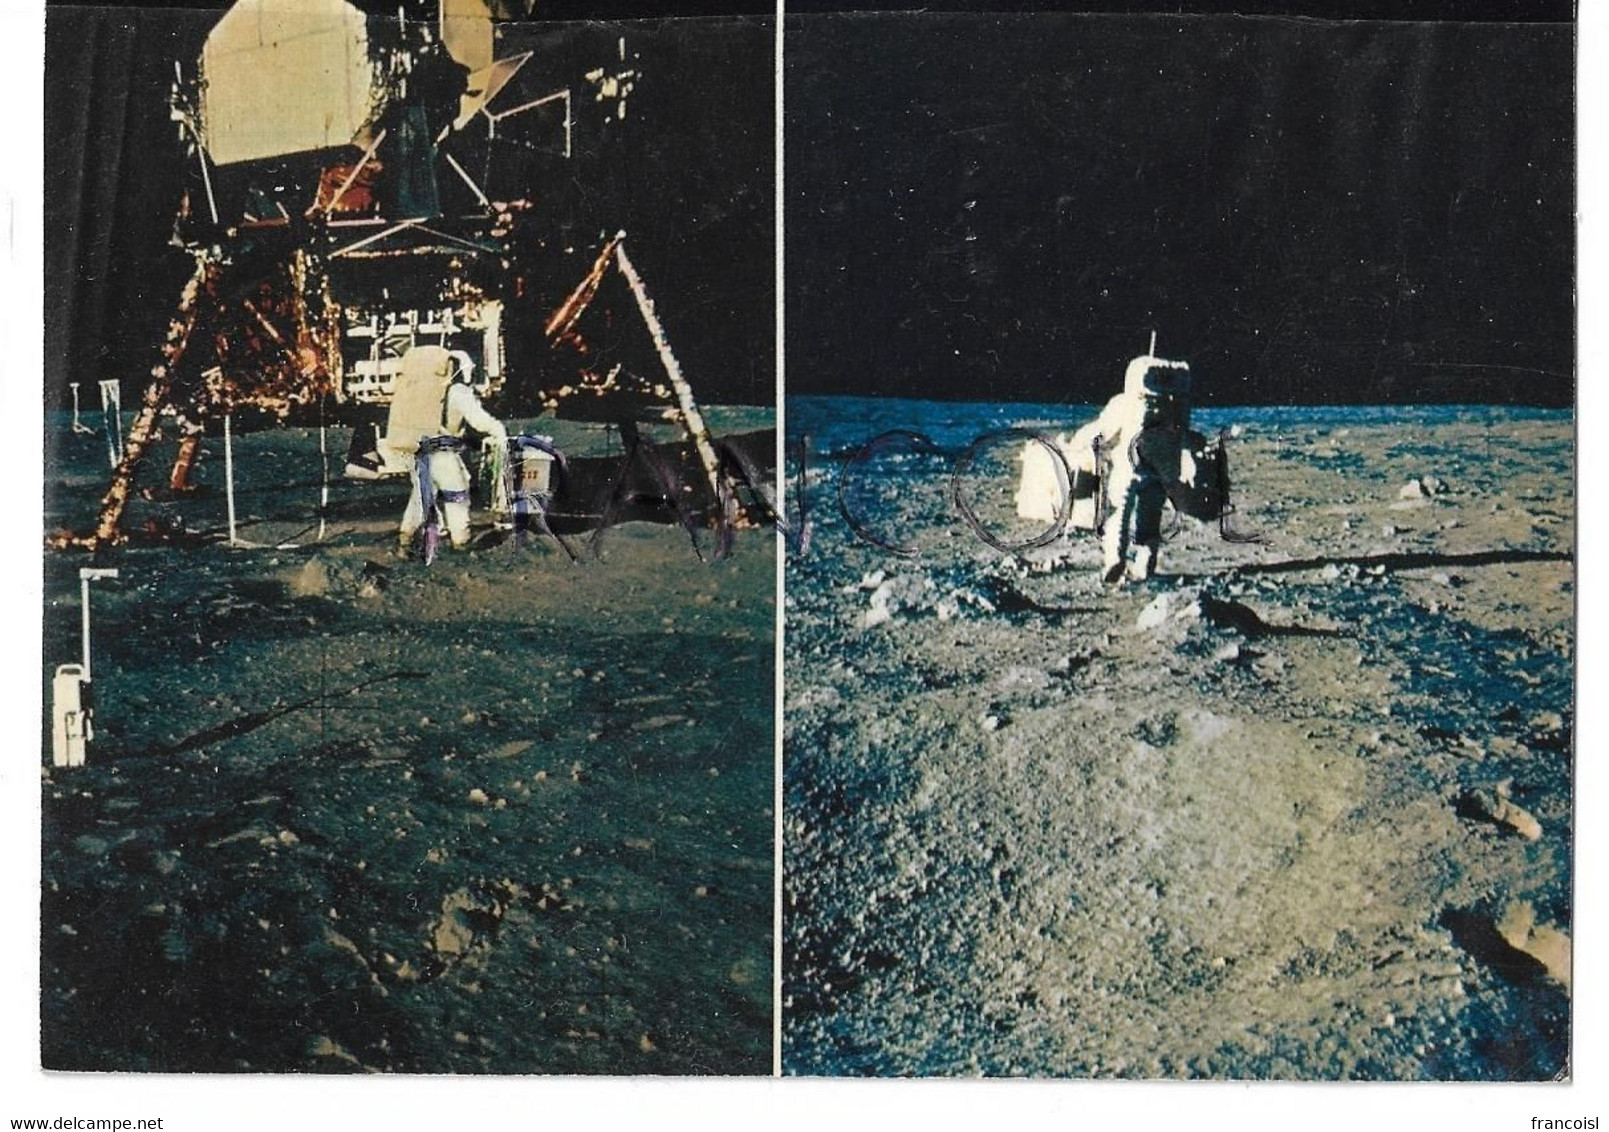 La Conquête De La Lune Par Apollo XI. Aldrin Quitte Le LEM - Astronomie